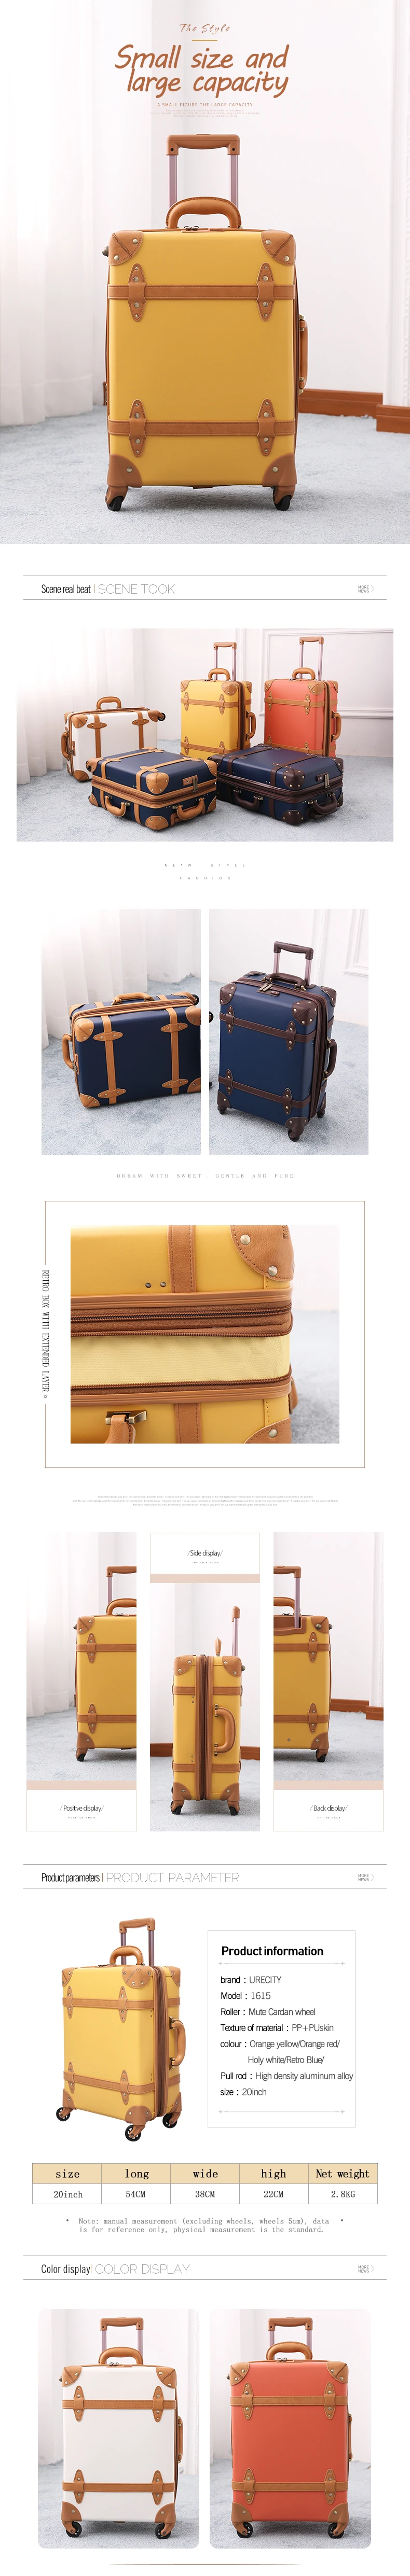 2018 багаж счетчик прокатки ретро чемодан Натуральная Кожа PU ручной клади 5 видов цветов Модные, Высокое качество Бесплатная доставка